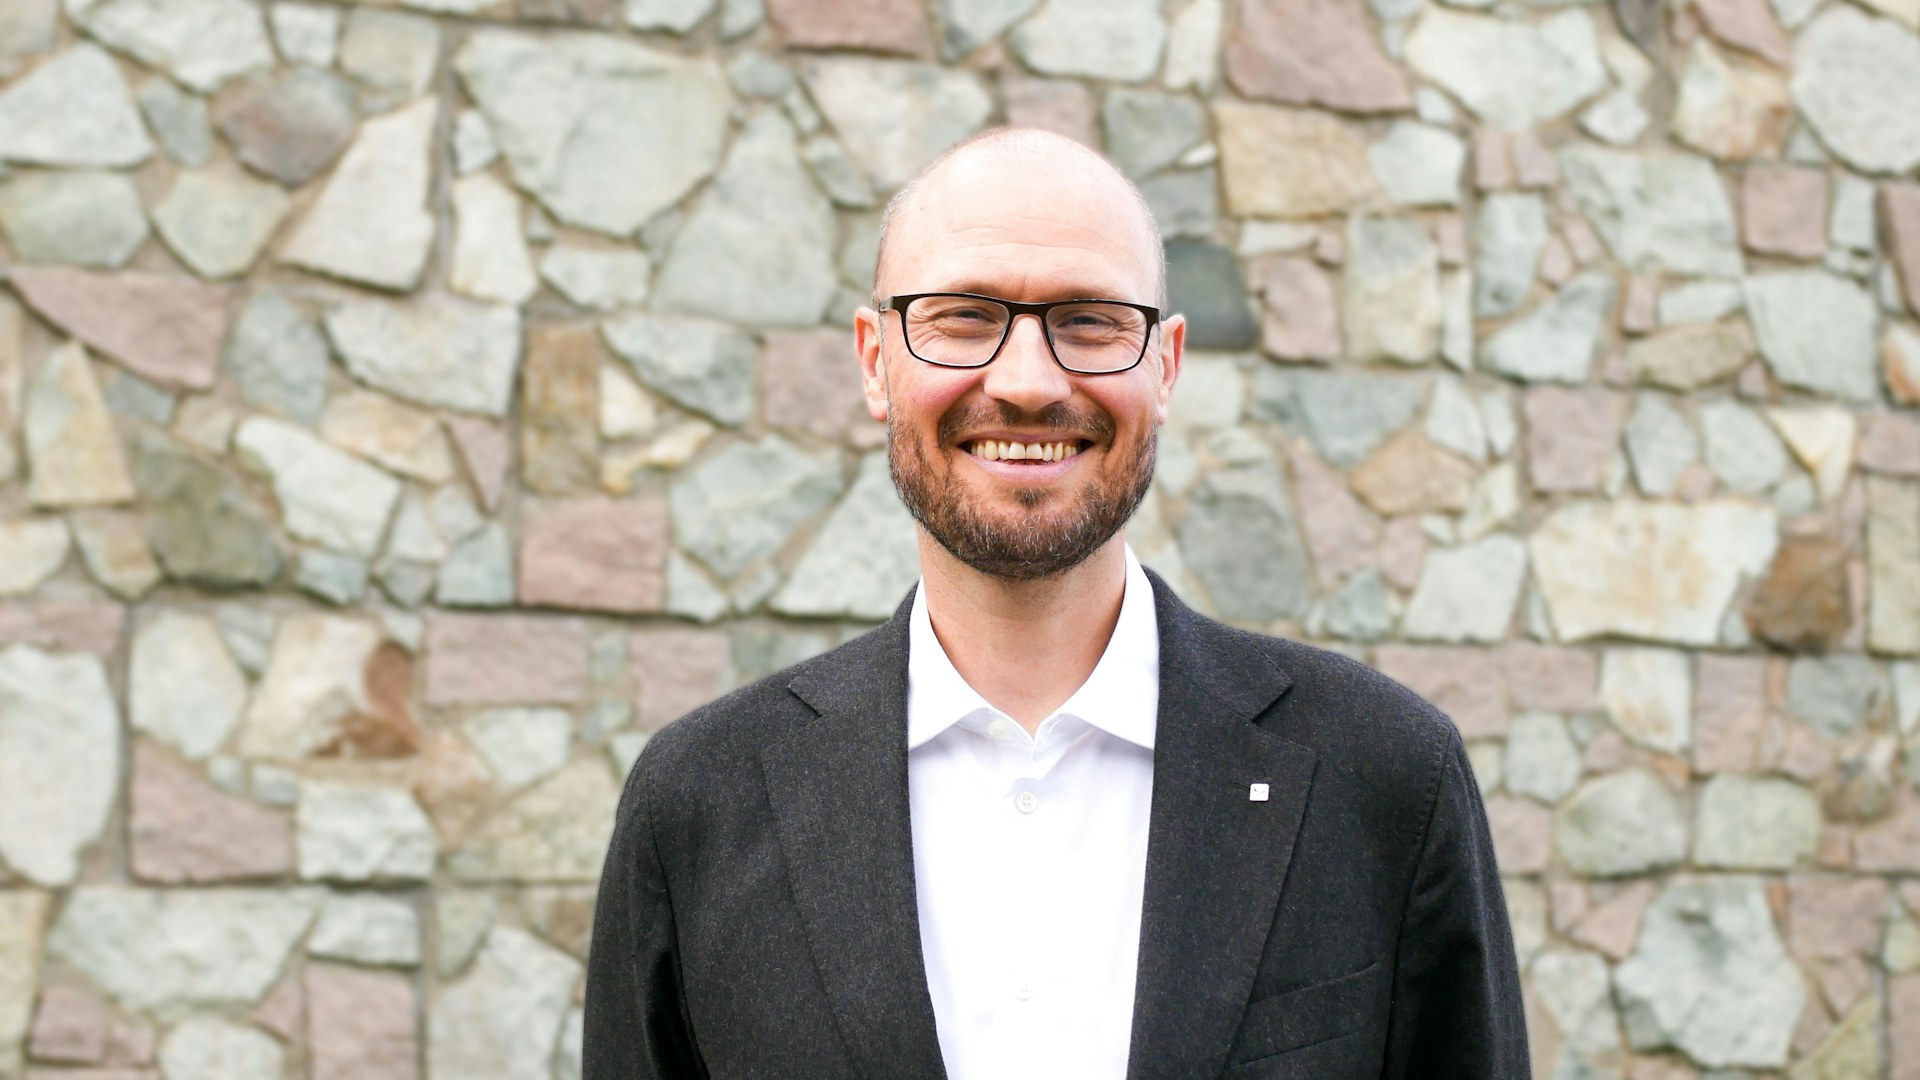 President i Psykologforeningen, Håkon Skard, står smilende foran en bakgrunn av mur.